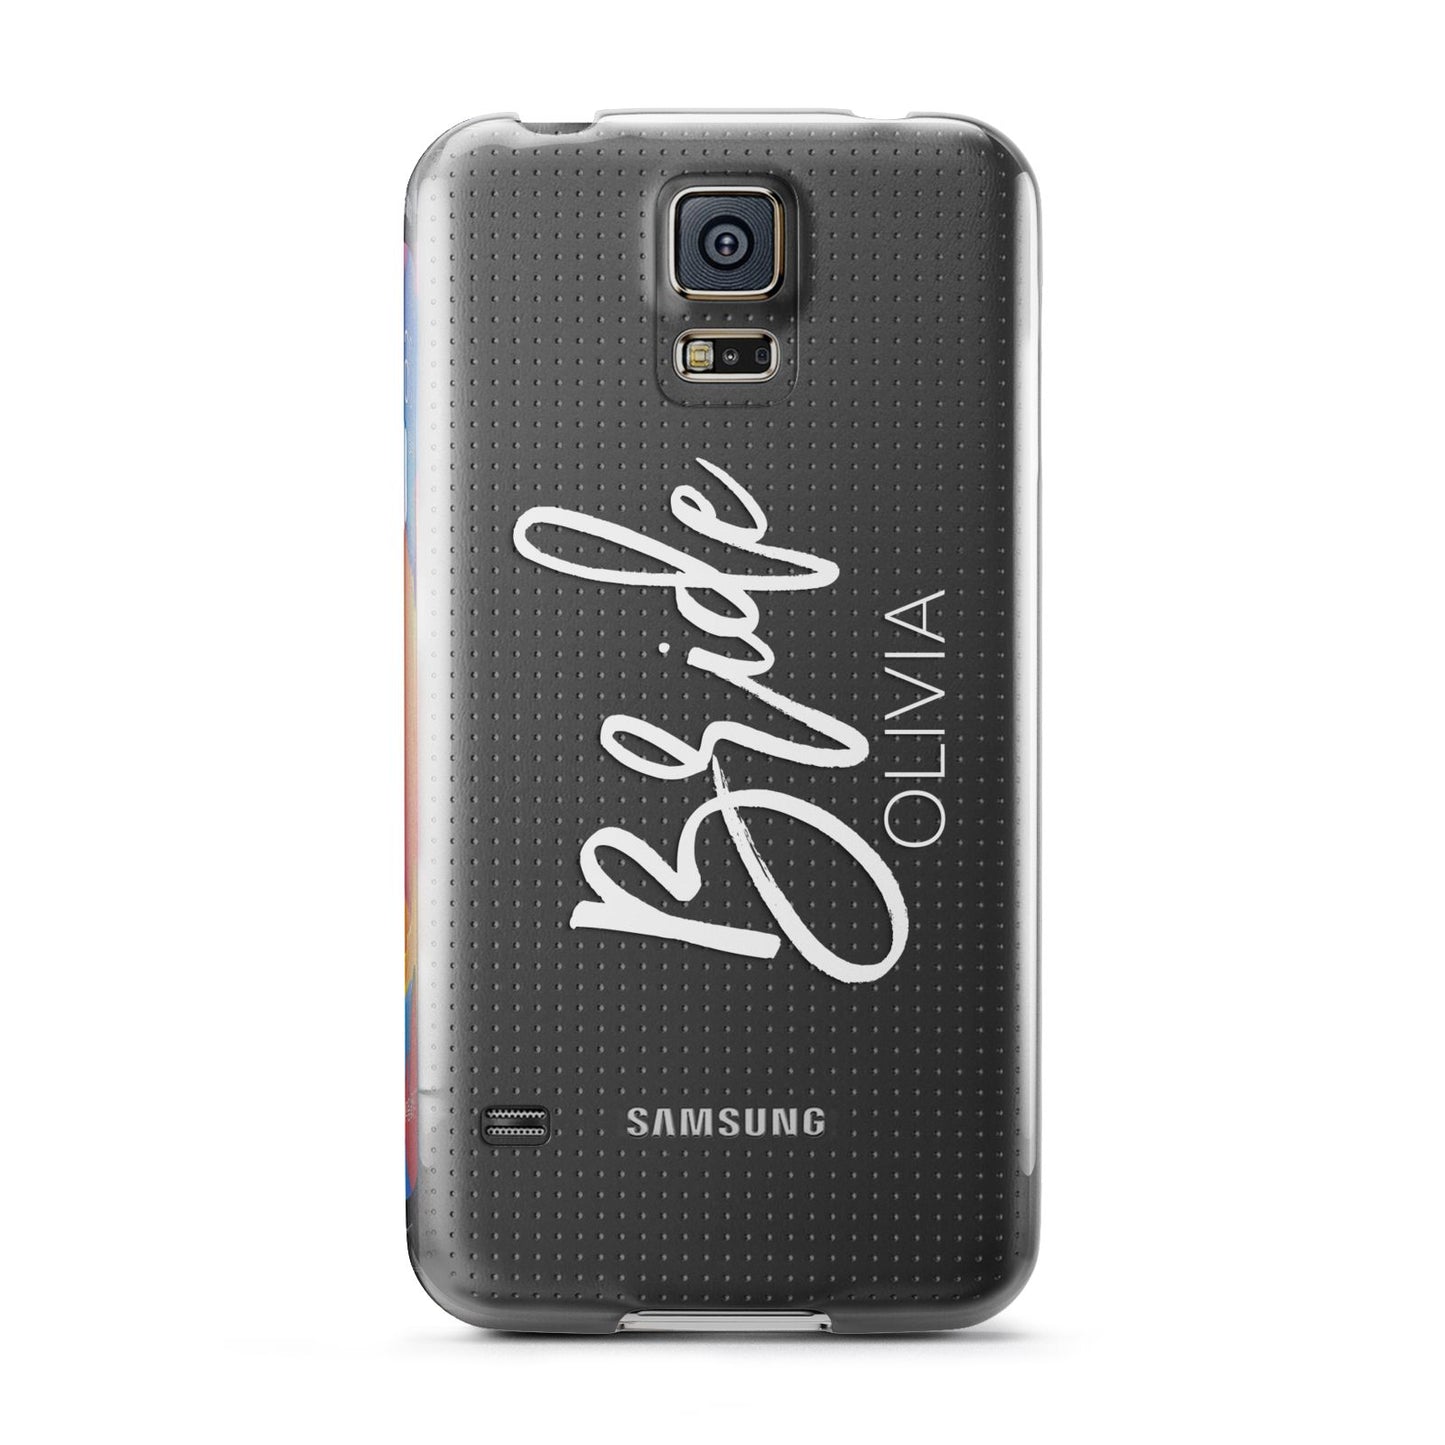 Personalised Bride Samsung Galaxy S5 Case